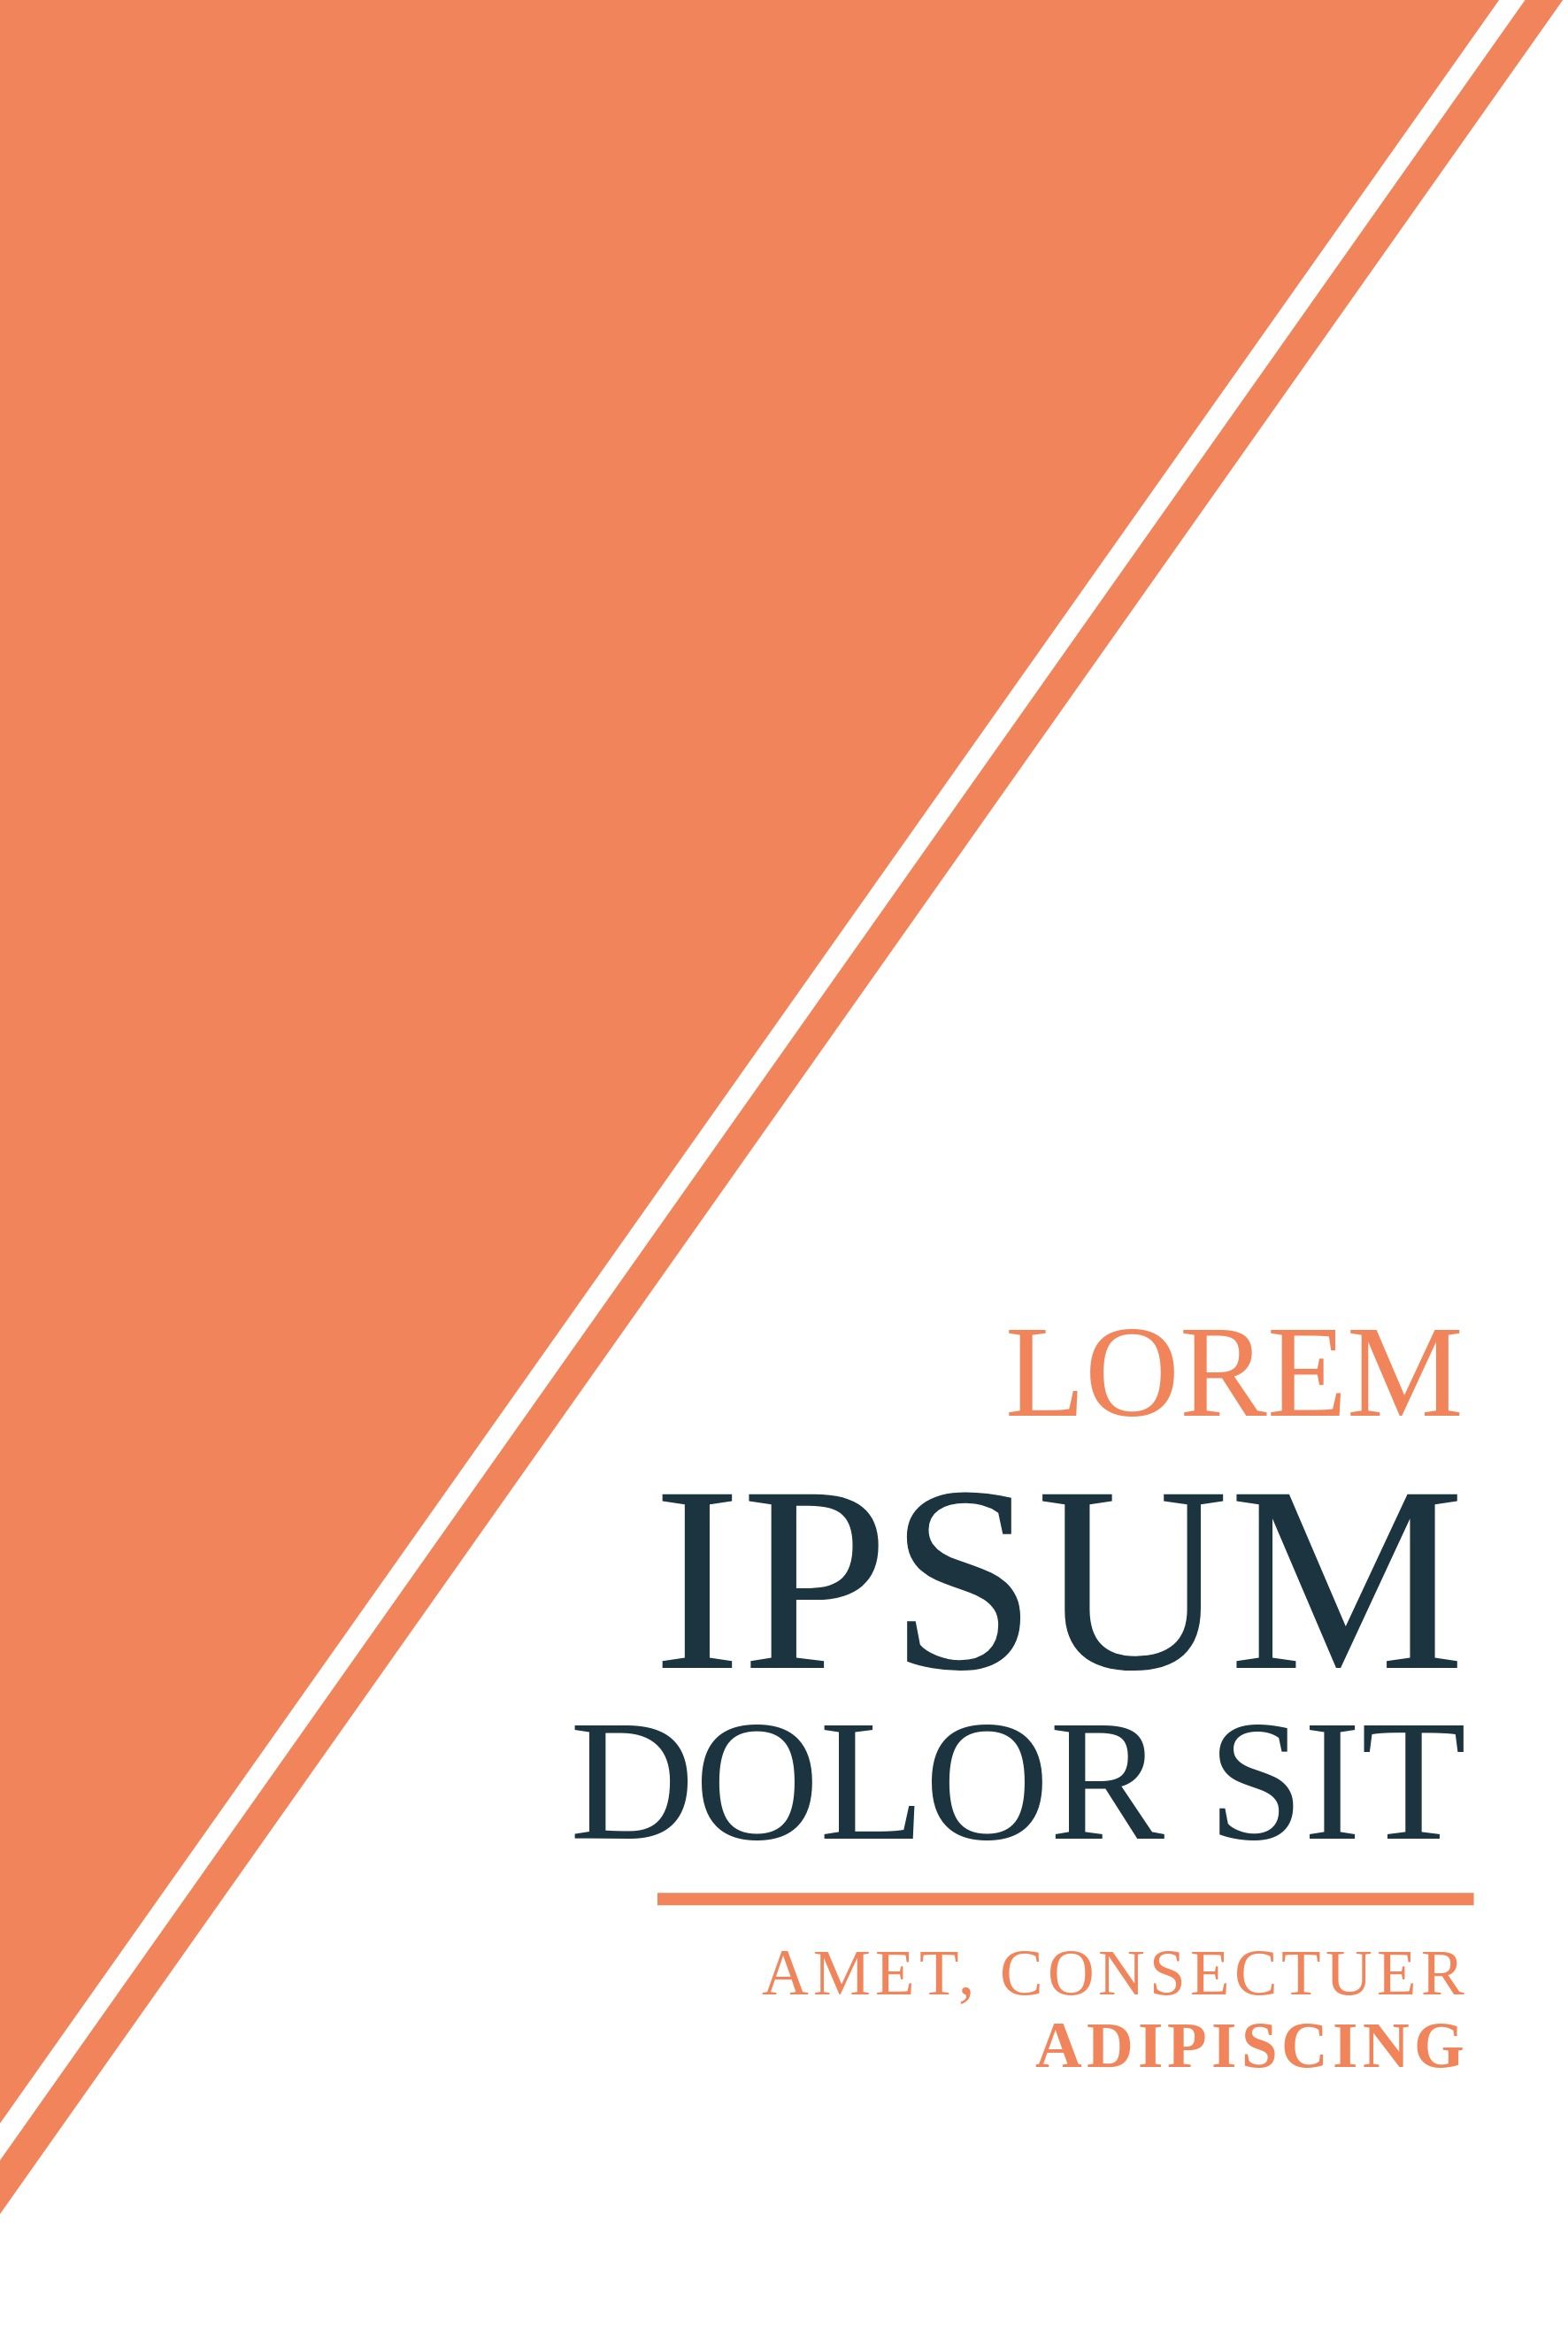 Buchcover-Vorlage mit zu bearbeitendem Lorem-Ipsum-Text